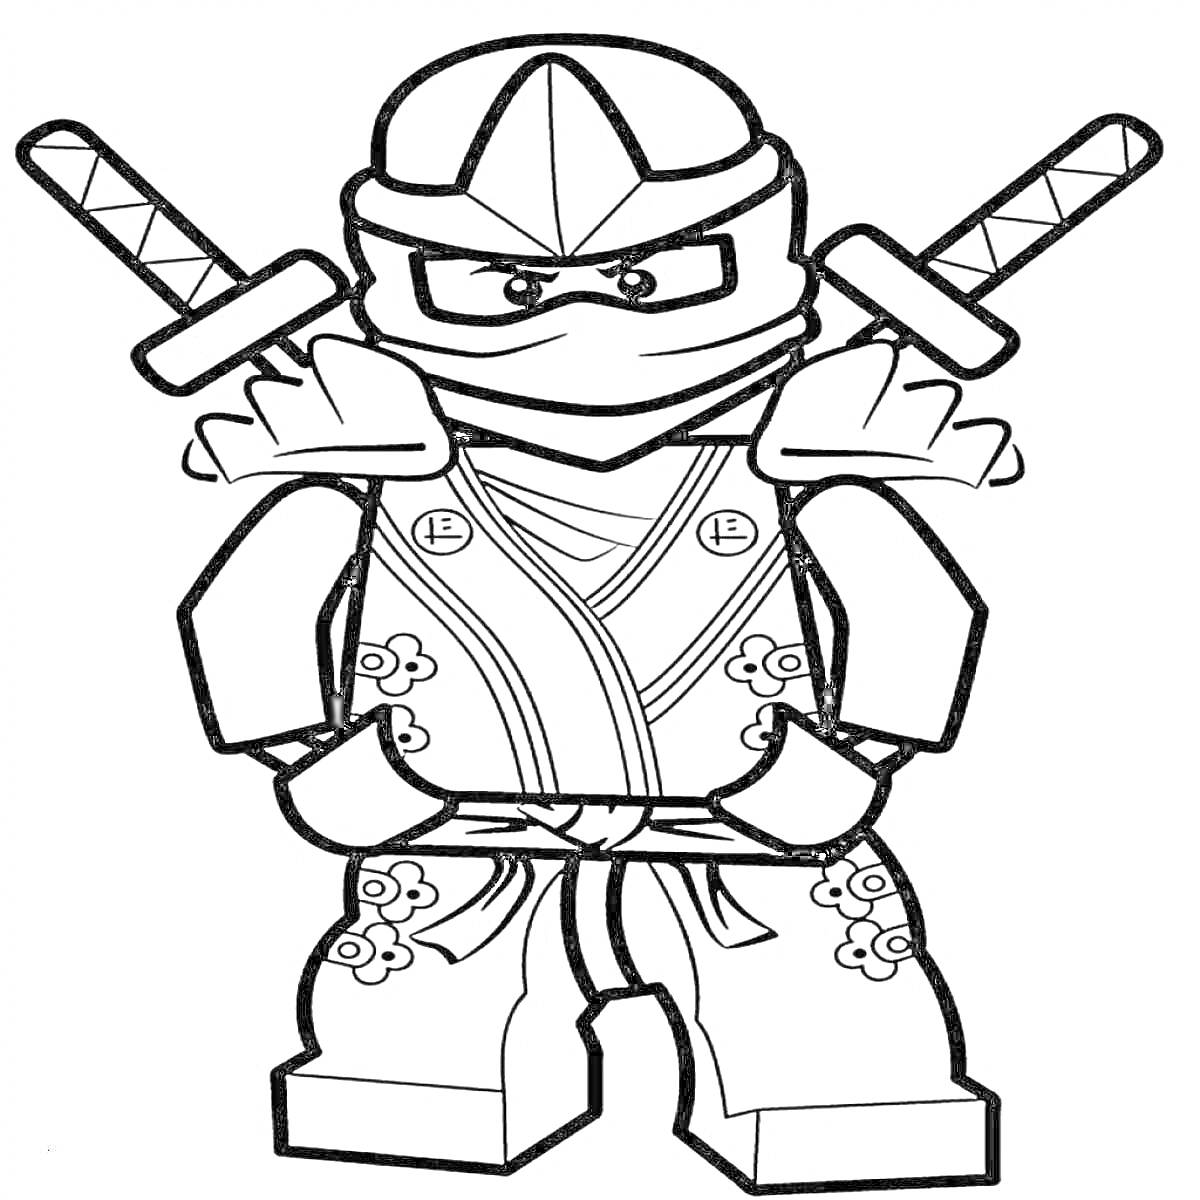 Раскраска Черепашка-ниндзя Лего с двумя мечами, в шлеме и маске, с декоративными узорами на одежде